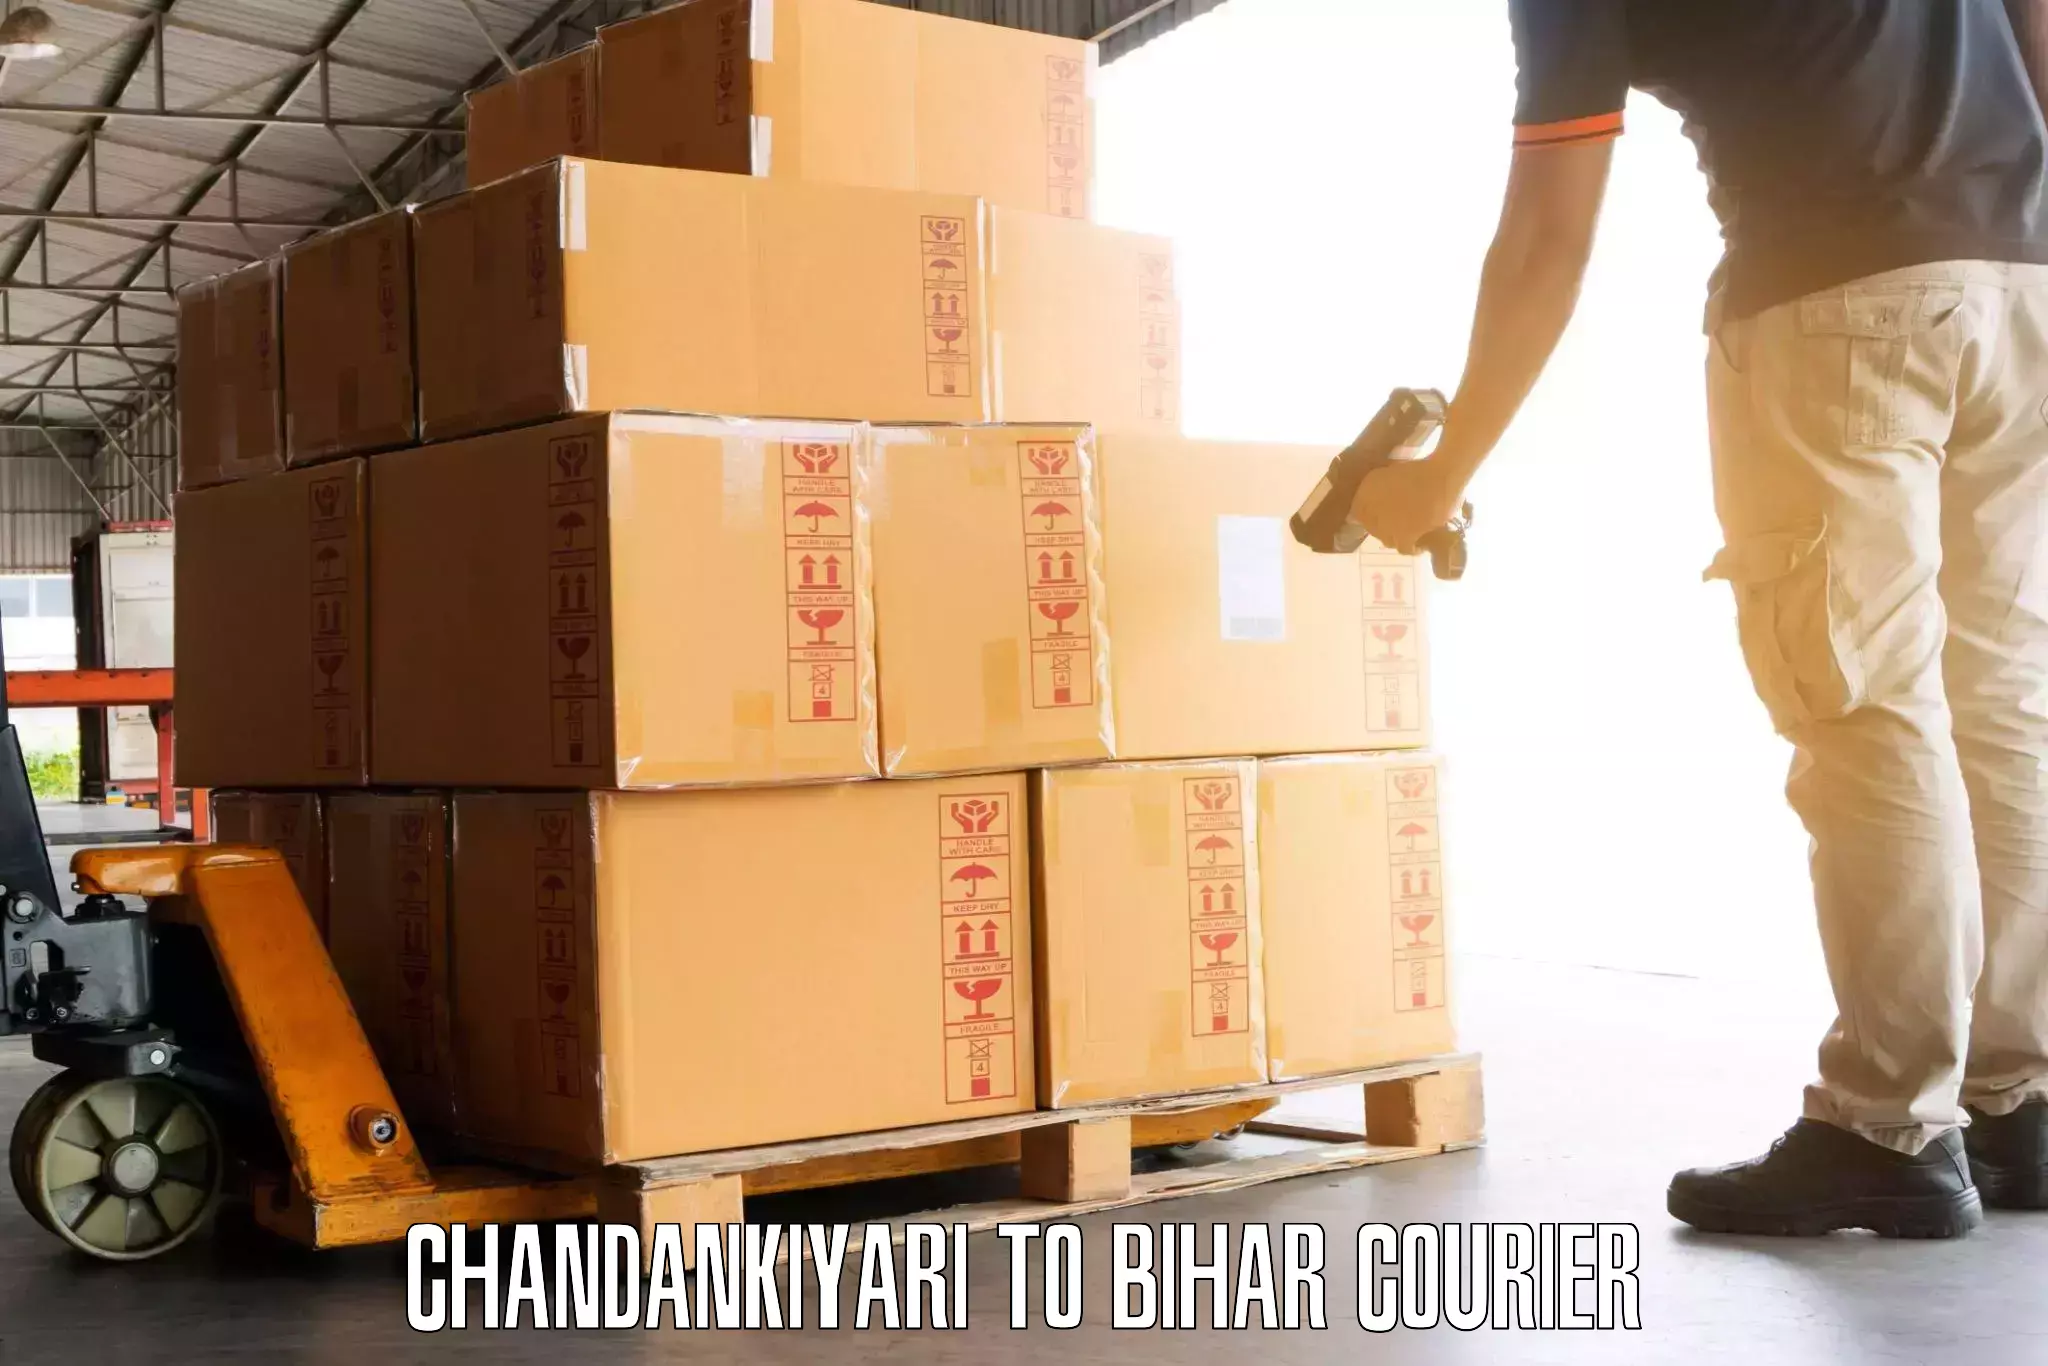 Affordable luggage courier Chandankiyari to Kharagpur Munger